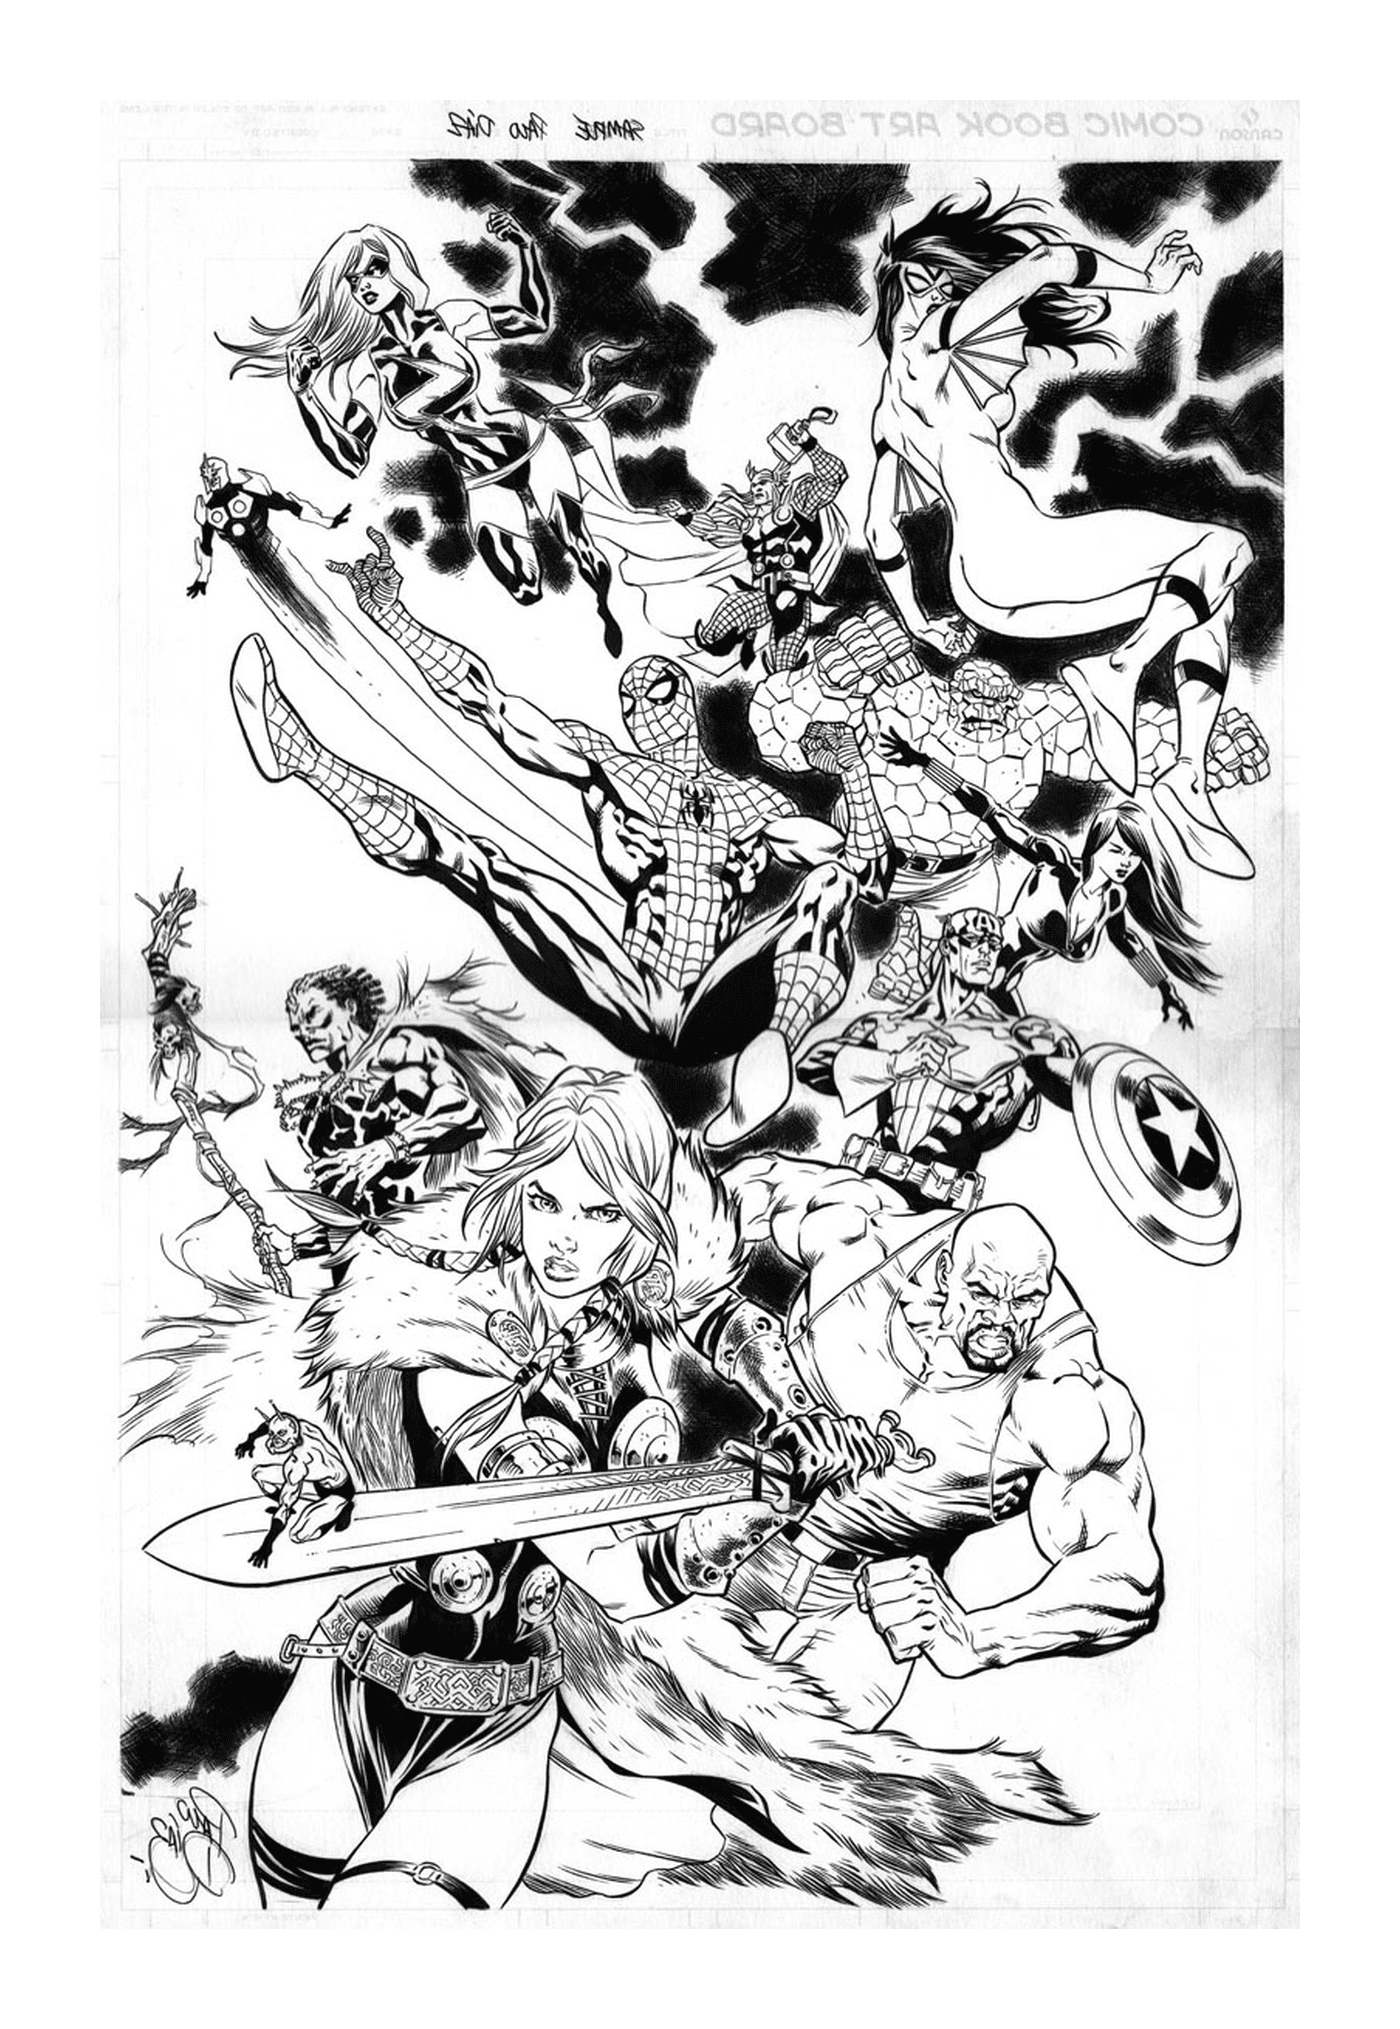  Um grupo de super-heróis em preto e branco 